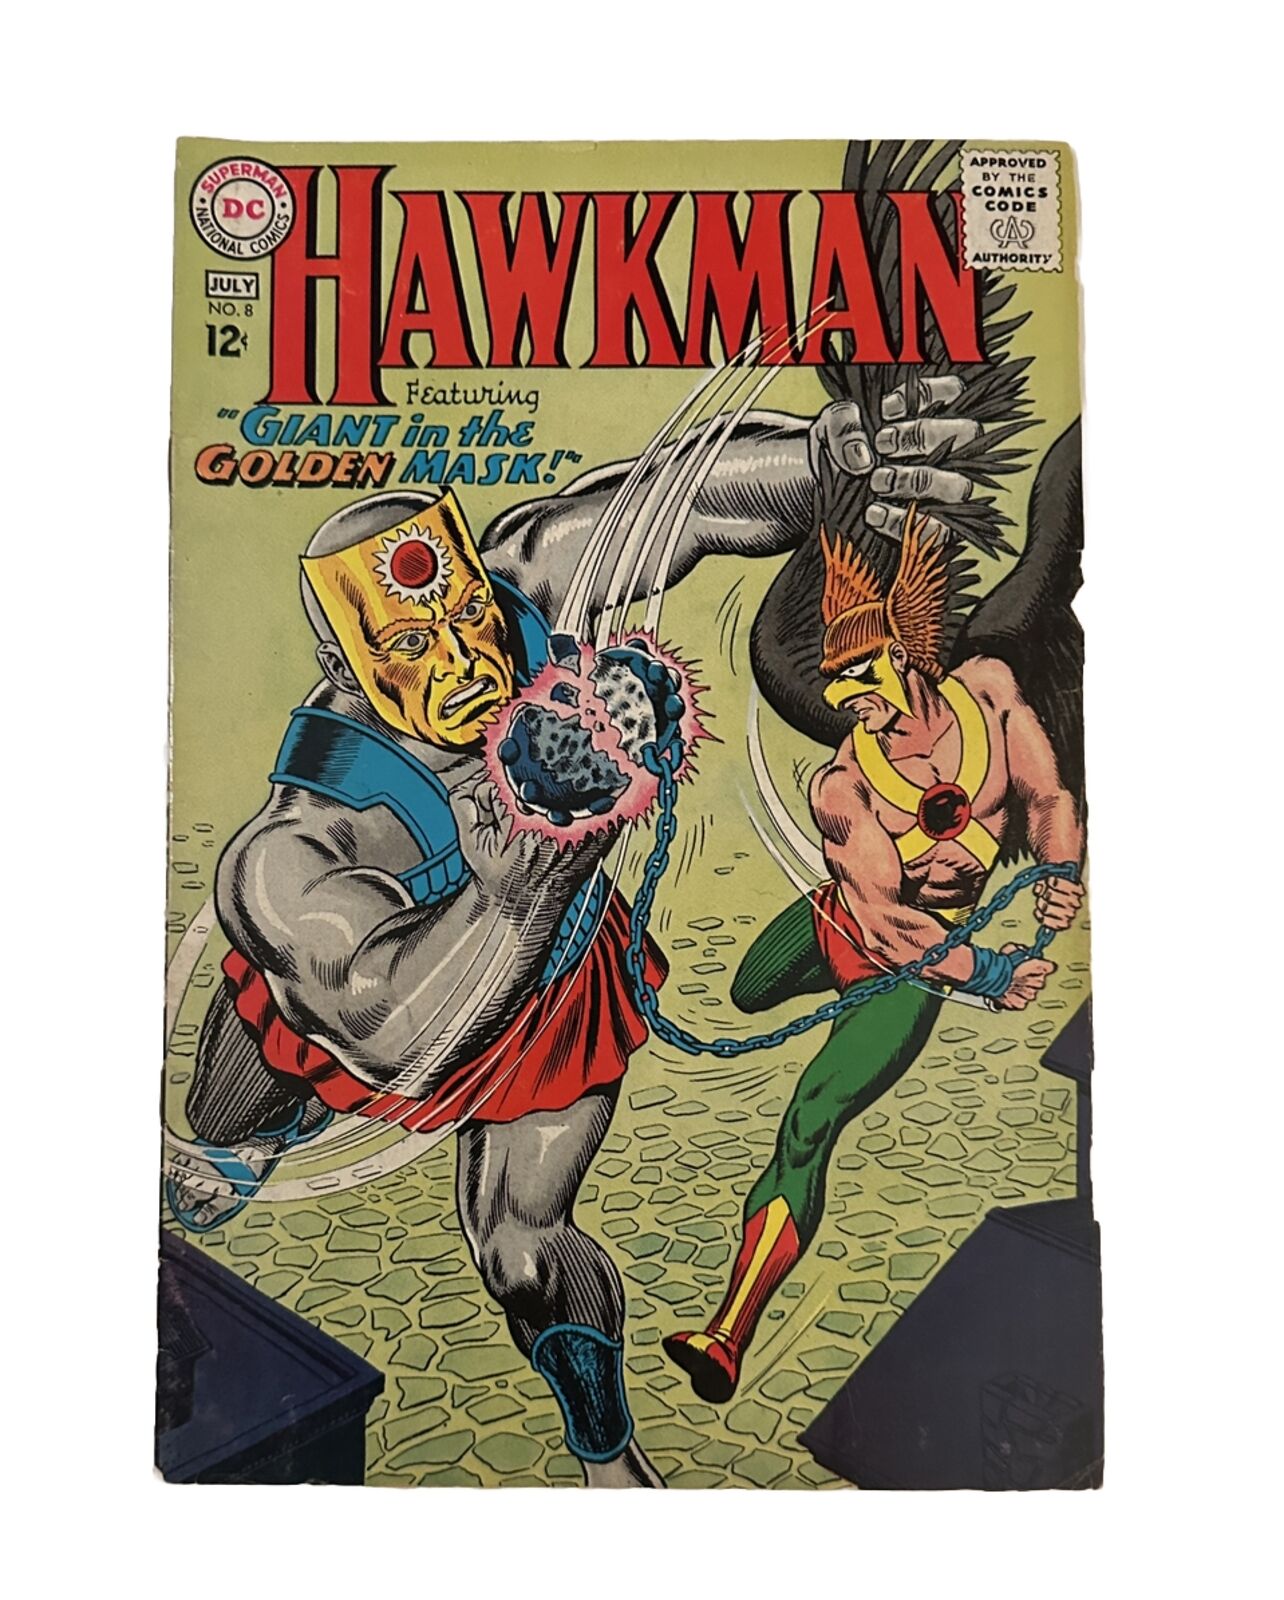 Hawkman #8 1965 (VG) Silver Age